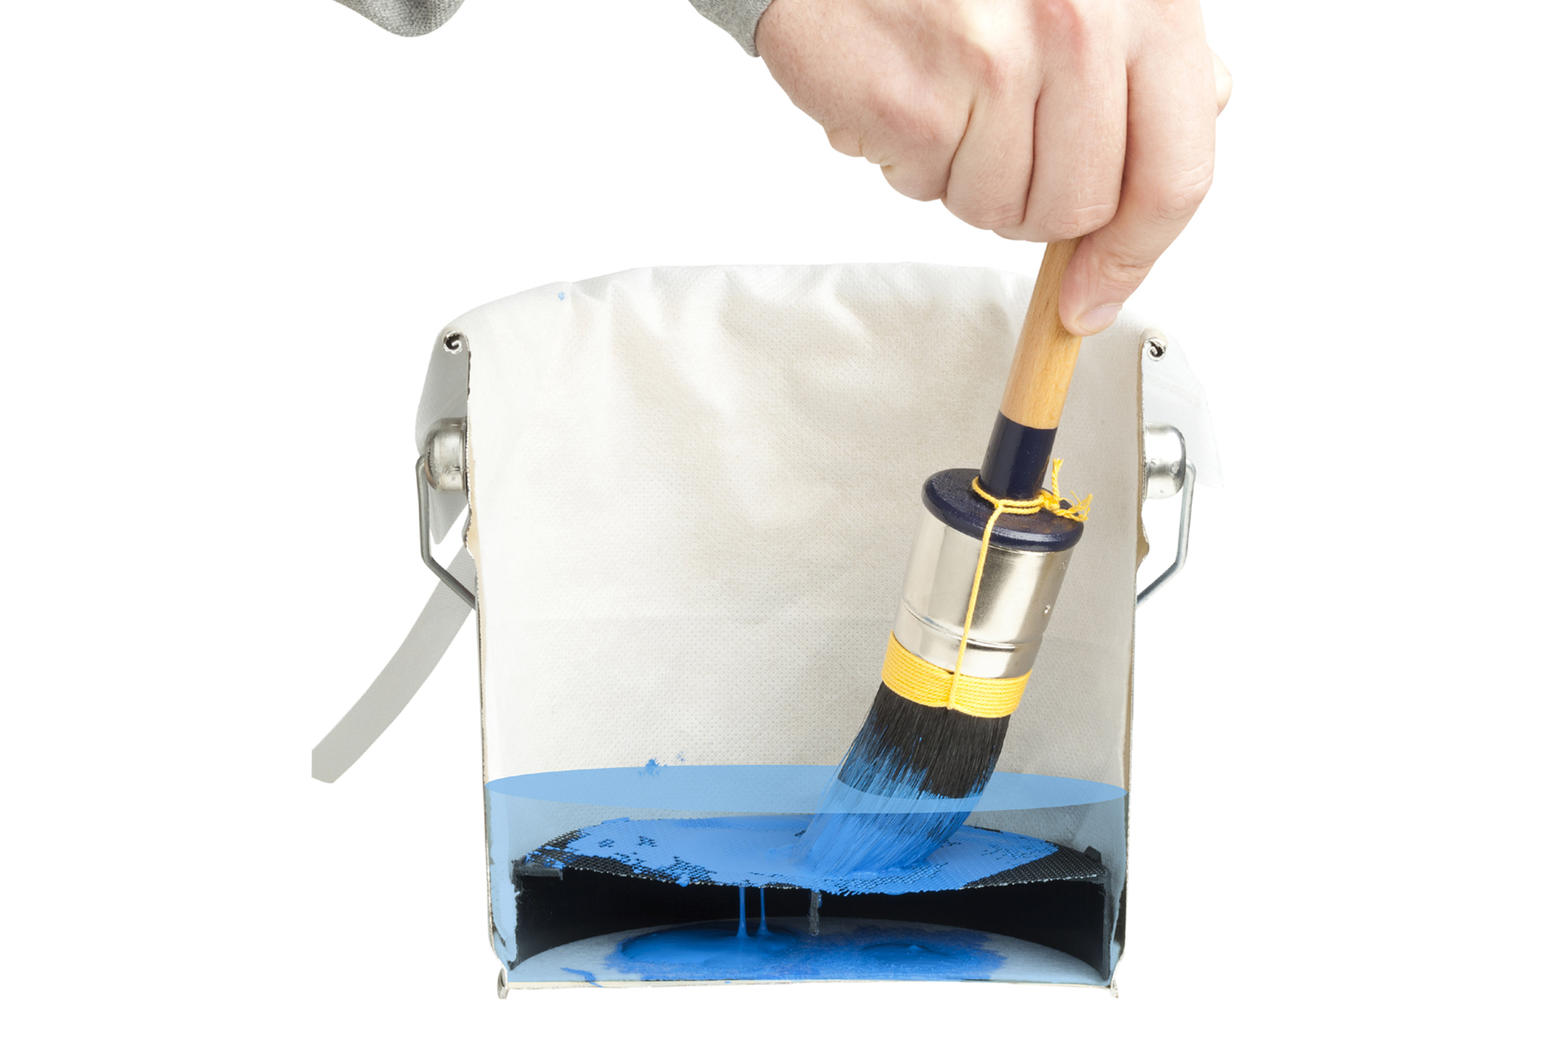 De verfdeeltjes worden onder de zeef in de zak opgevangen. Daardoor kun je de schoonmaakvloeistof langer blijven gebruiken. 